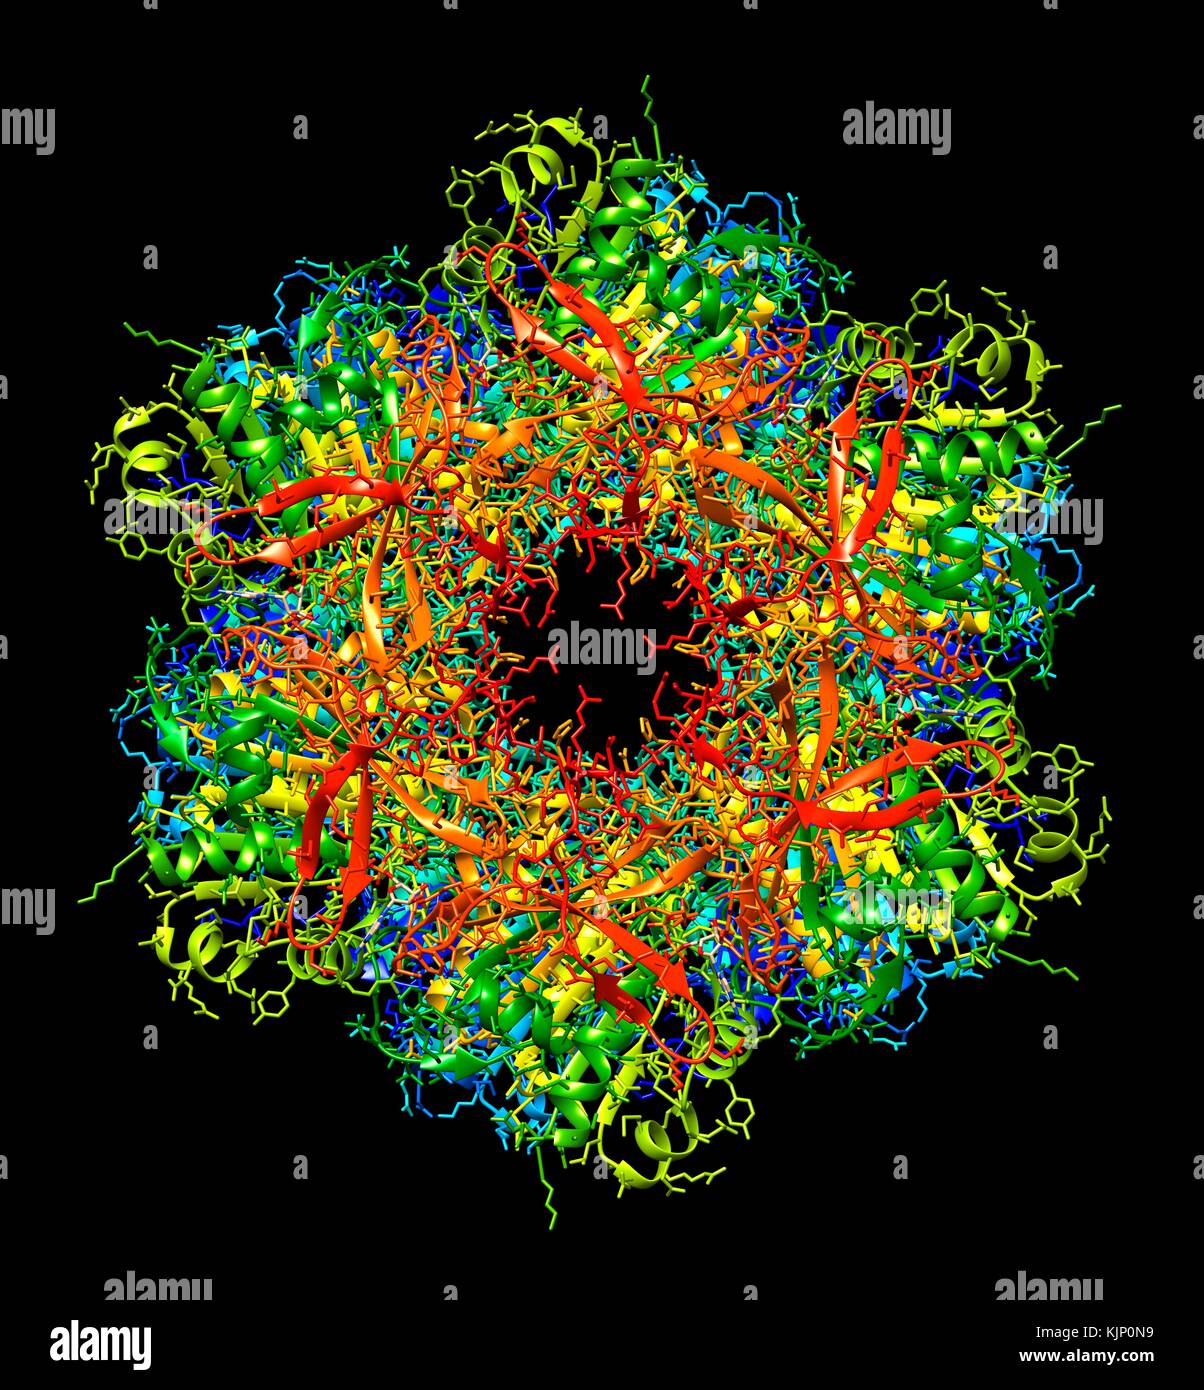 Bakterielle circadiane Uhr Eiweißmolekül. Computer Modell zeigt die molekulare Struktur des KaiC Protein gefunden in Cyanobakterien (Blaualgen). KaiC ist ein Protein, das durch die kaiC gen ausgedrückt und ist einer der drei wie Proteine, die für den Tag-Nacht-Rhythmen in diese Bakterien notwendig sind. Circadiane Rhythmen sind biologische 'Uhren' mit einer Frist in der Dauer in der Nähe der 24 Stunden, die Schlaf- und Fütterung Muster in Tiere regulieren. In Bakterien, sie sollen helfen, die Zellteilung regulieren. Stockfoto